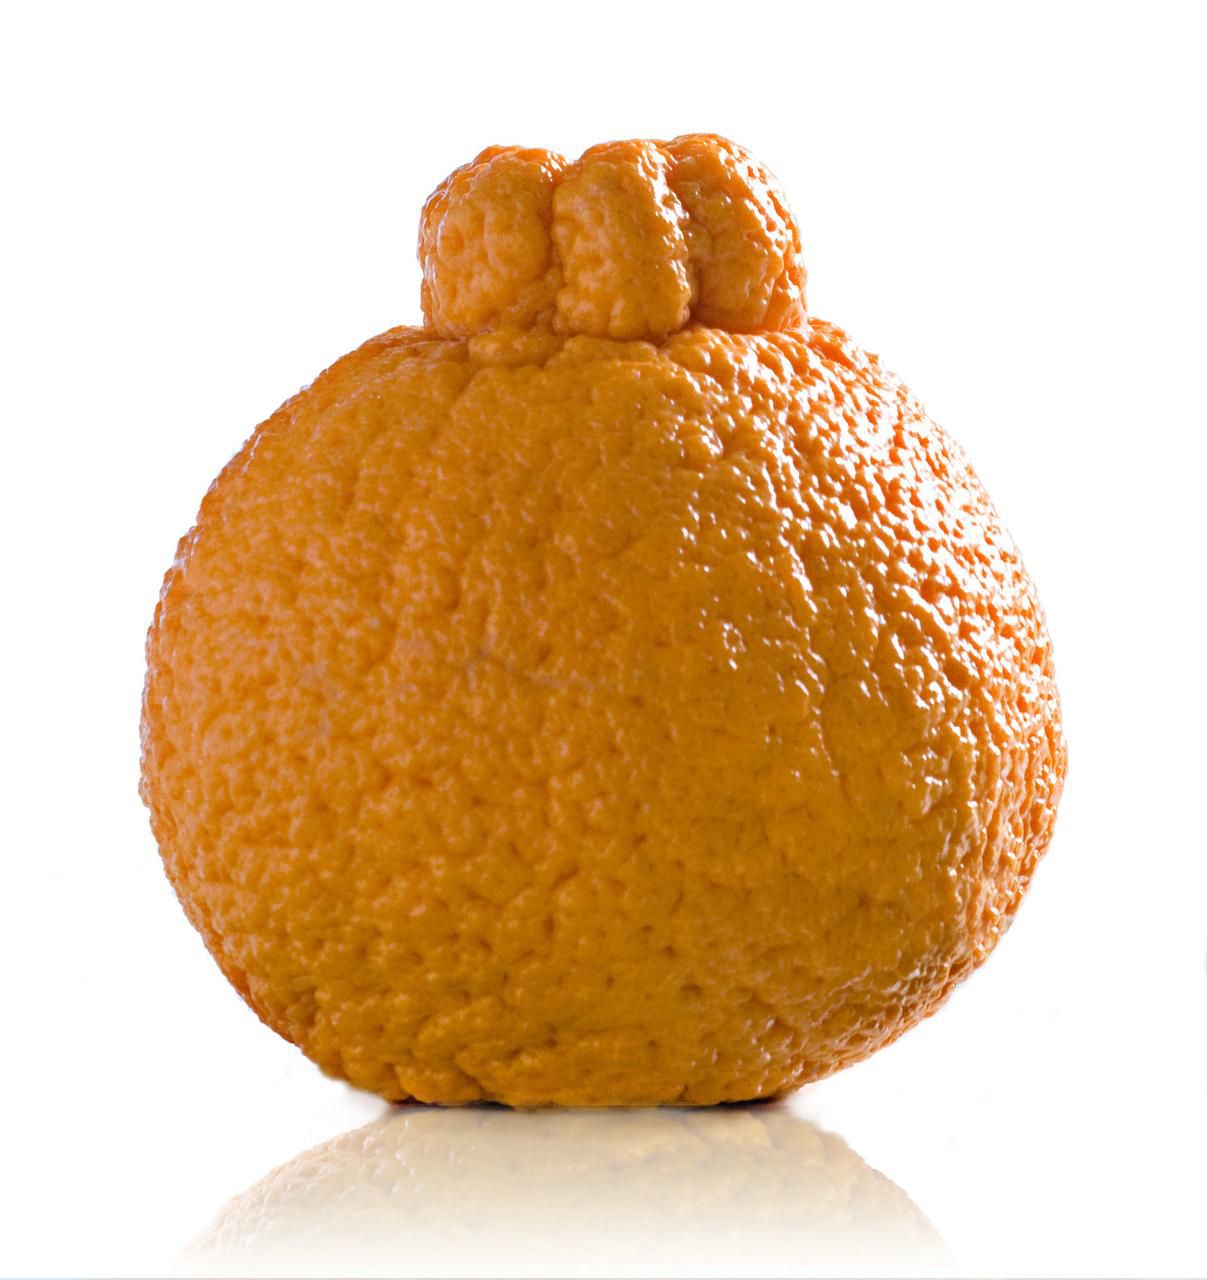 What Is A Sumo Citrus Orange? - Why Are Sumo Oranges So Expensive?